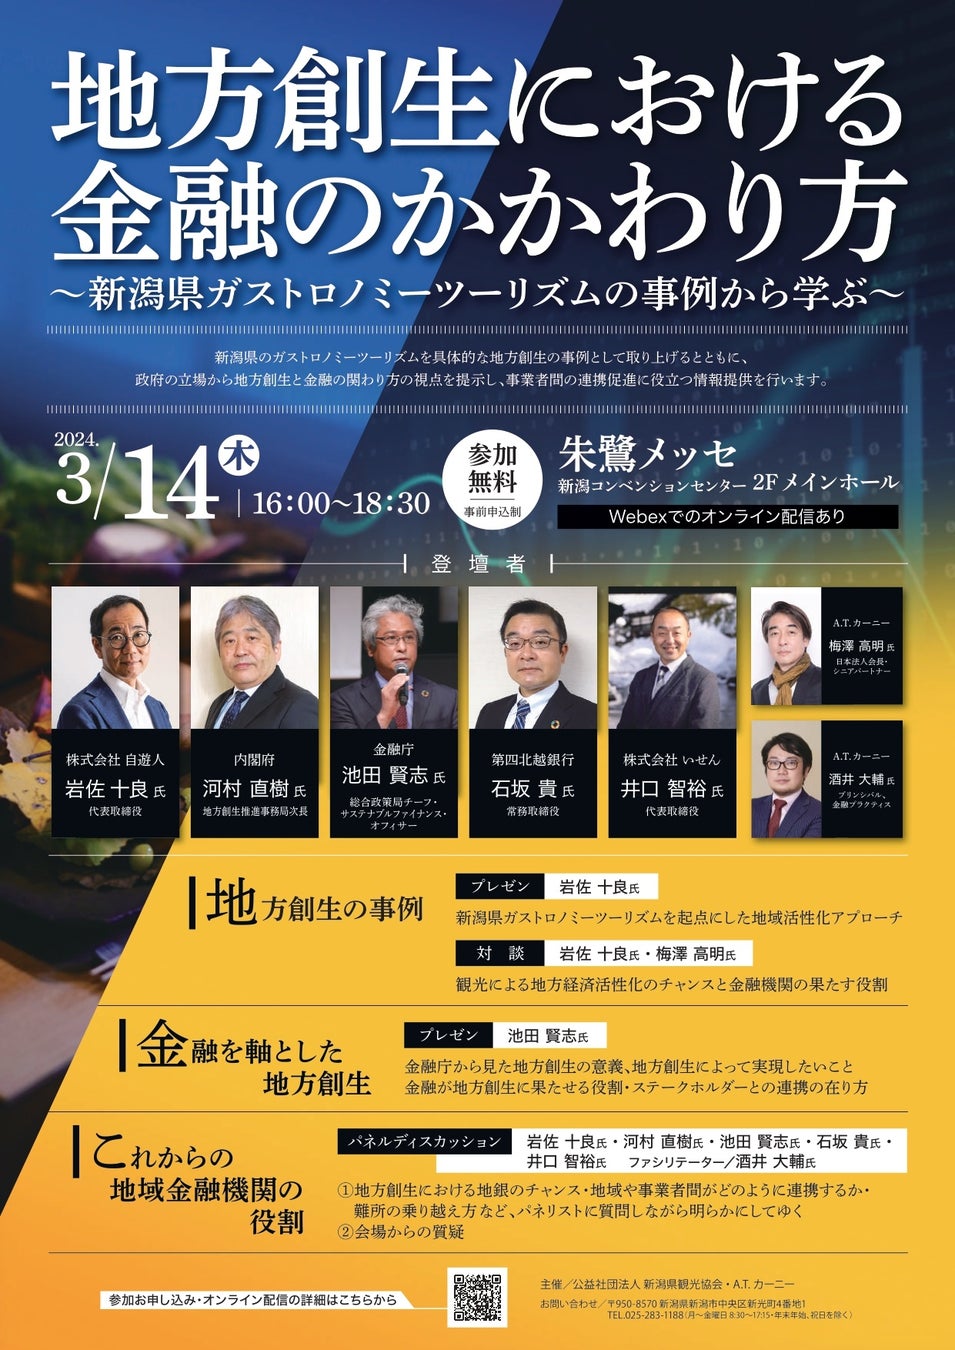 セミナー「地方創生における金融のかかわり方～新潟県ガストロノミーツーリズムの事例から学ぶ～」を開催します